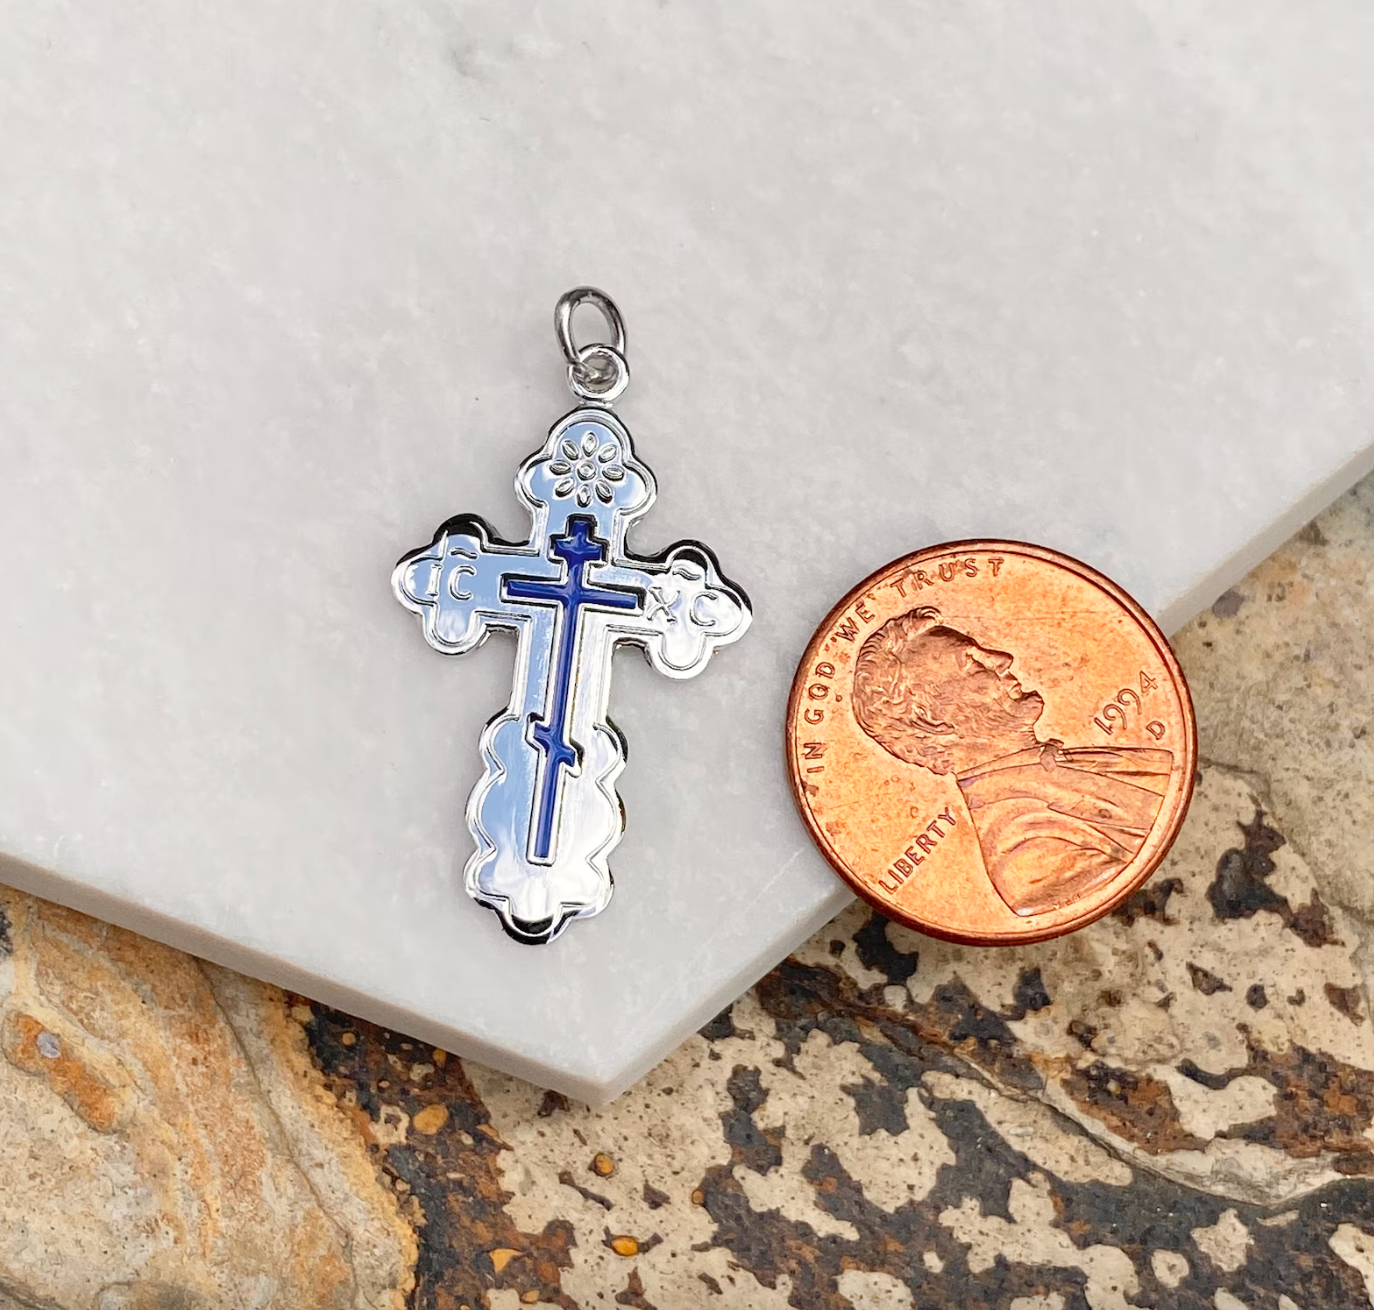 Sterling Silver Blue Enamel Eastern Orthodox Cross Pendant